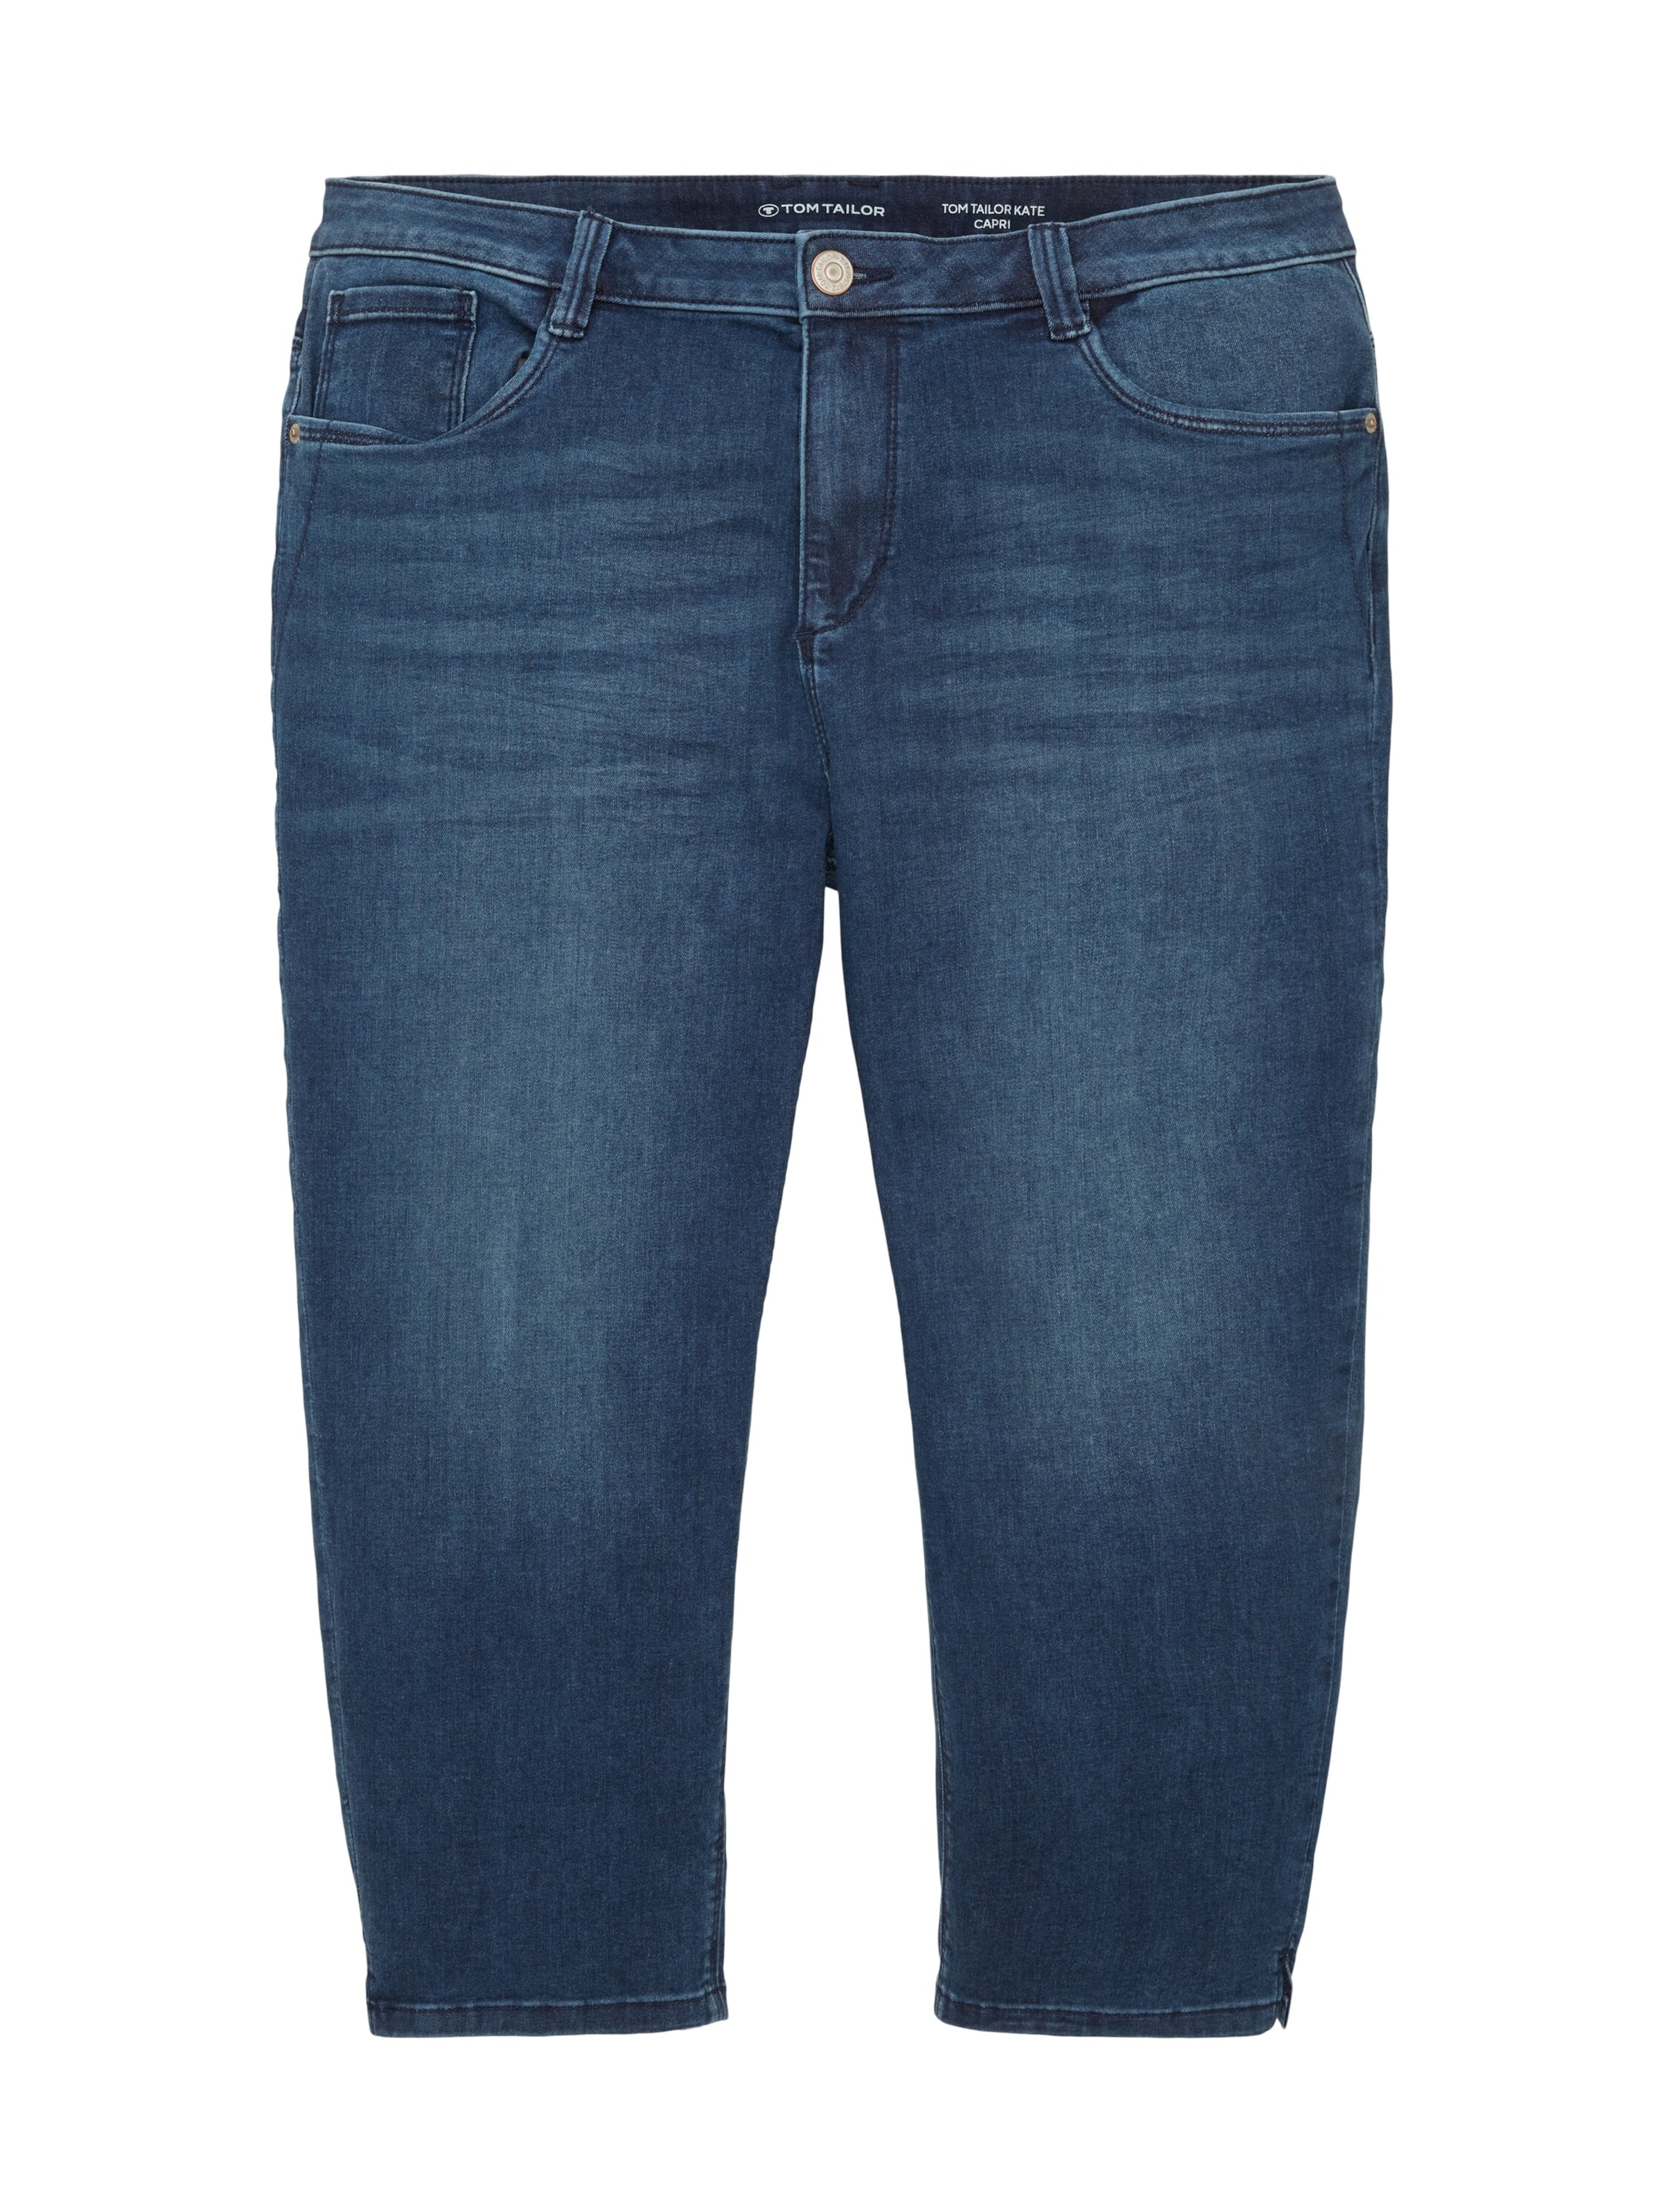 Tom Tailor Slim Men Blue Jeans - Buy Tom Tailor Slim Men Blue Jeans Online  at Best Prices in India | Flipkart.com